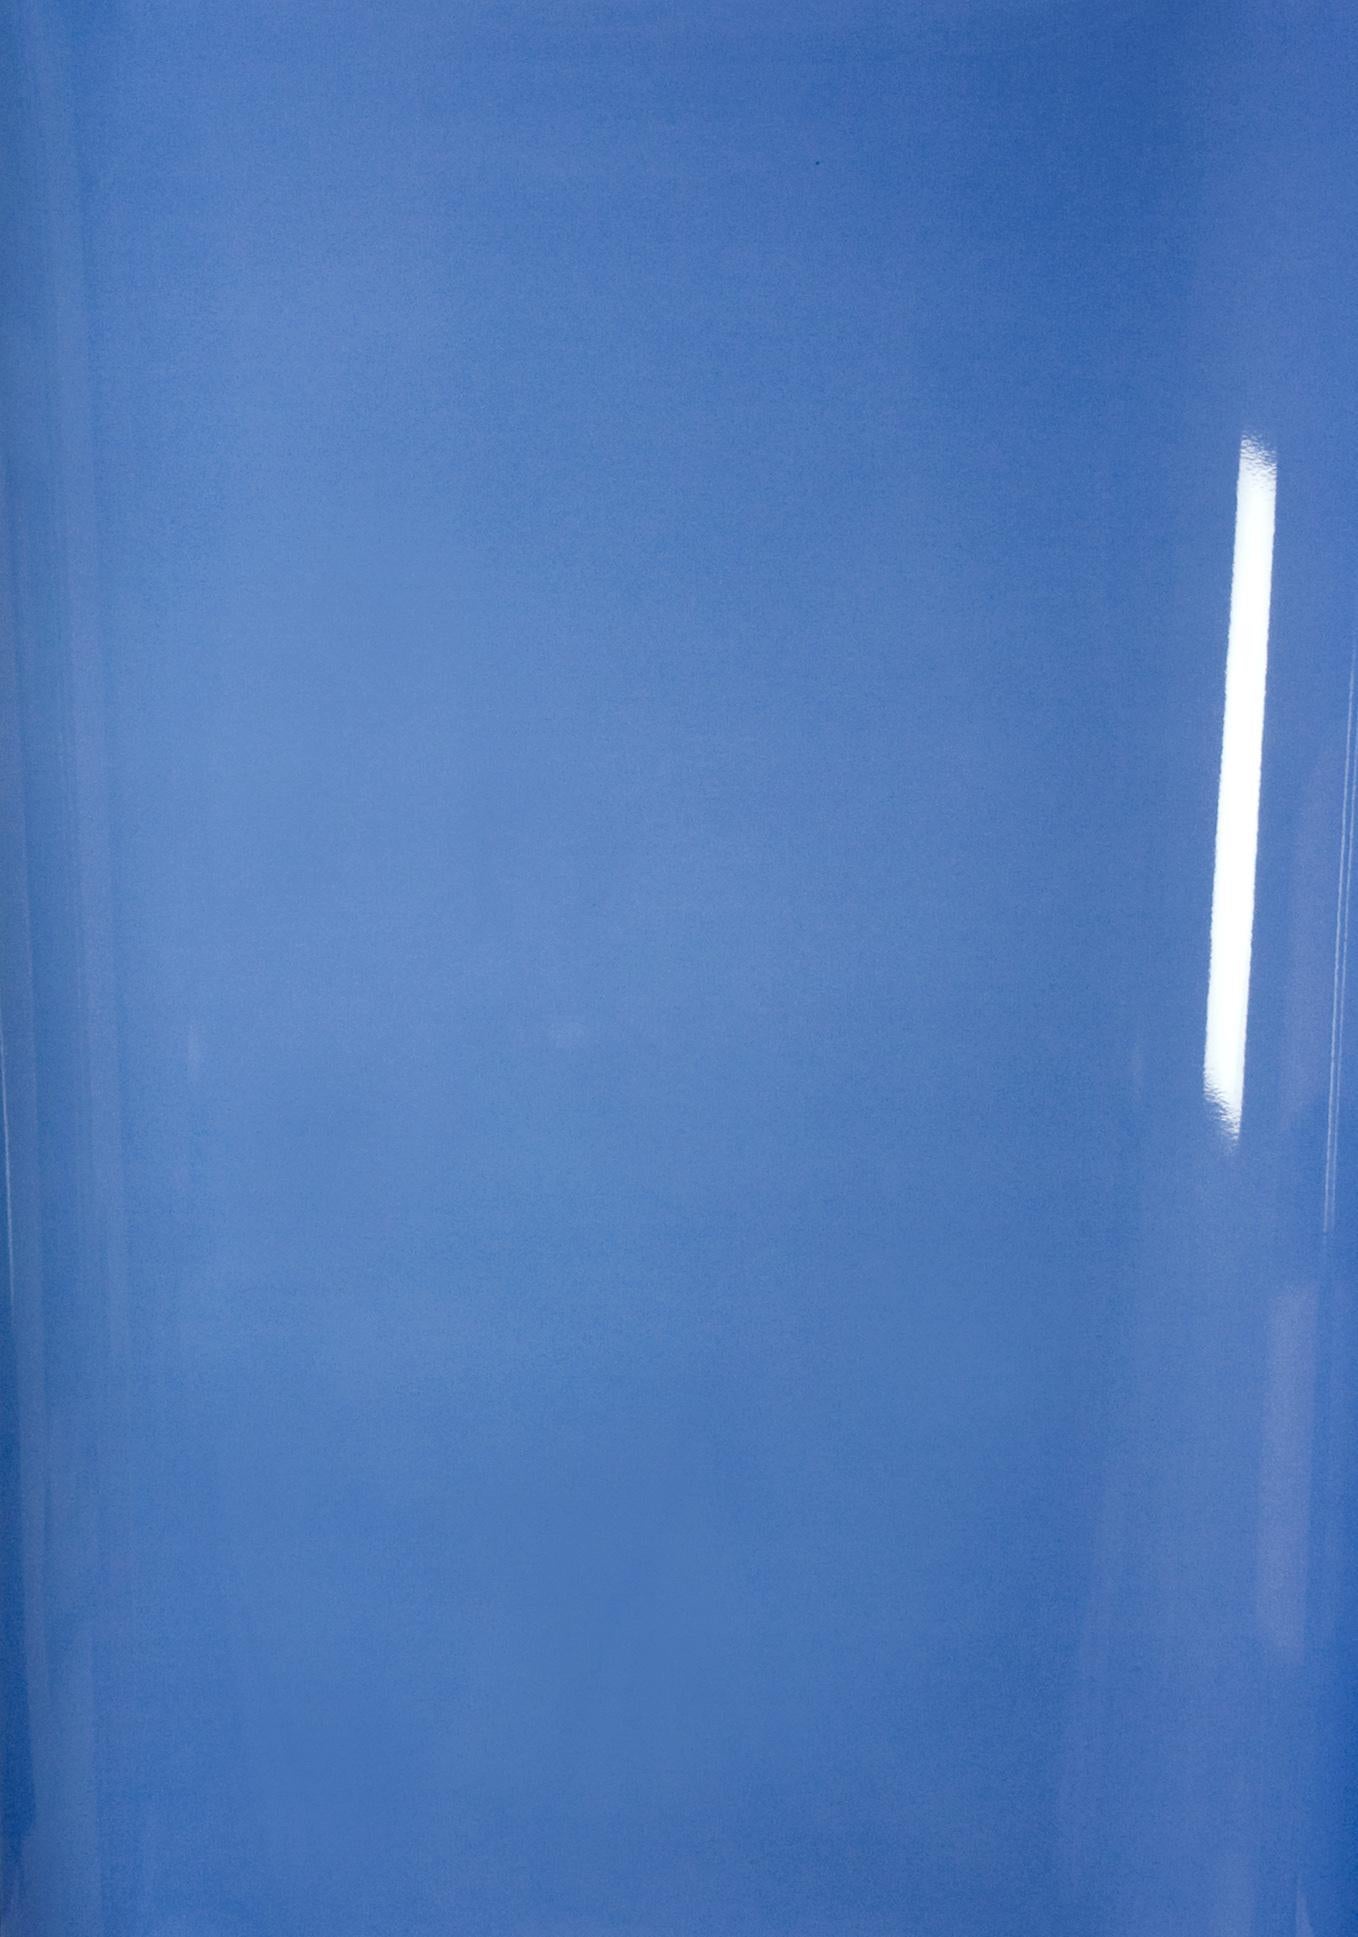 Schatten auf Papier, Nr. 4 – Zeitgenössische abstrakte blaue monochrome Fotografie